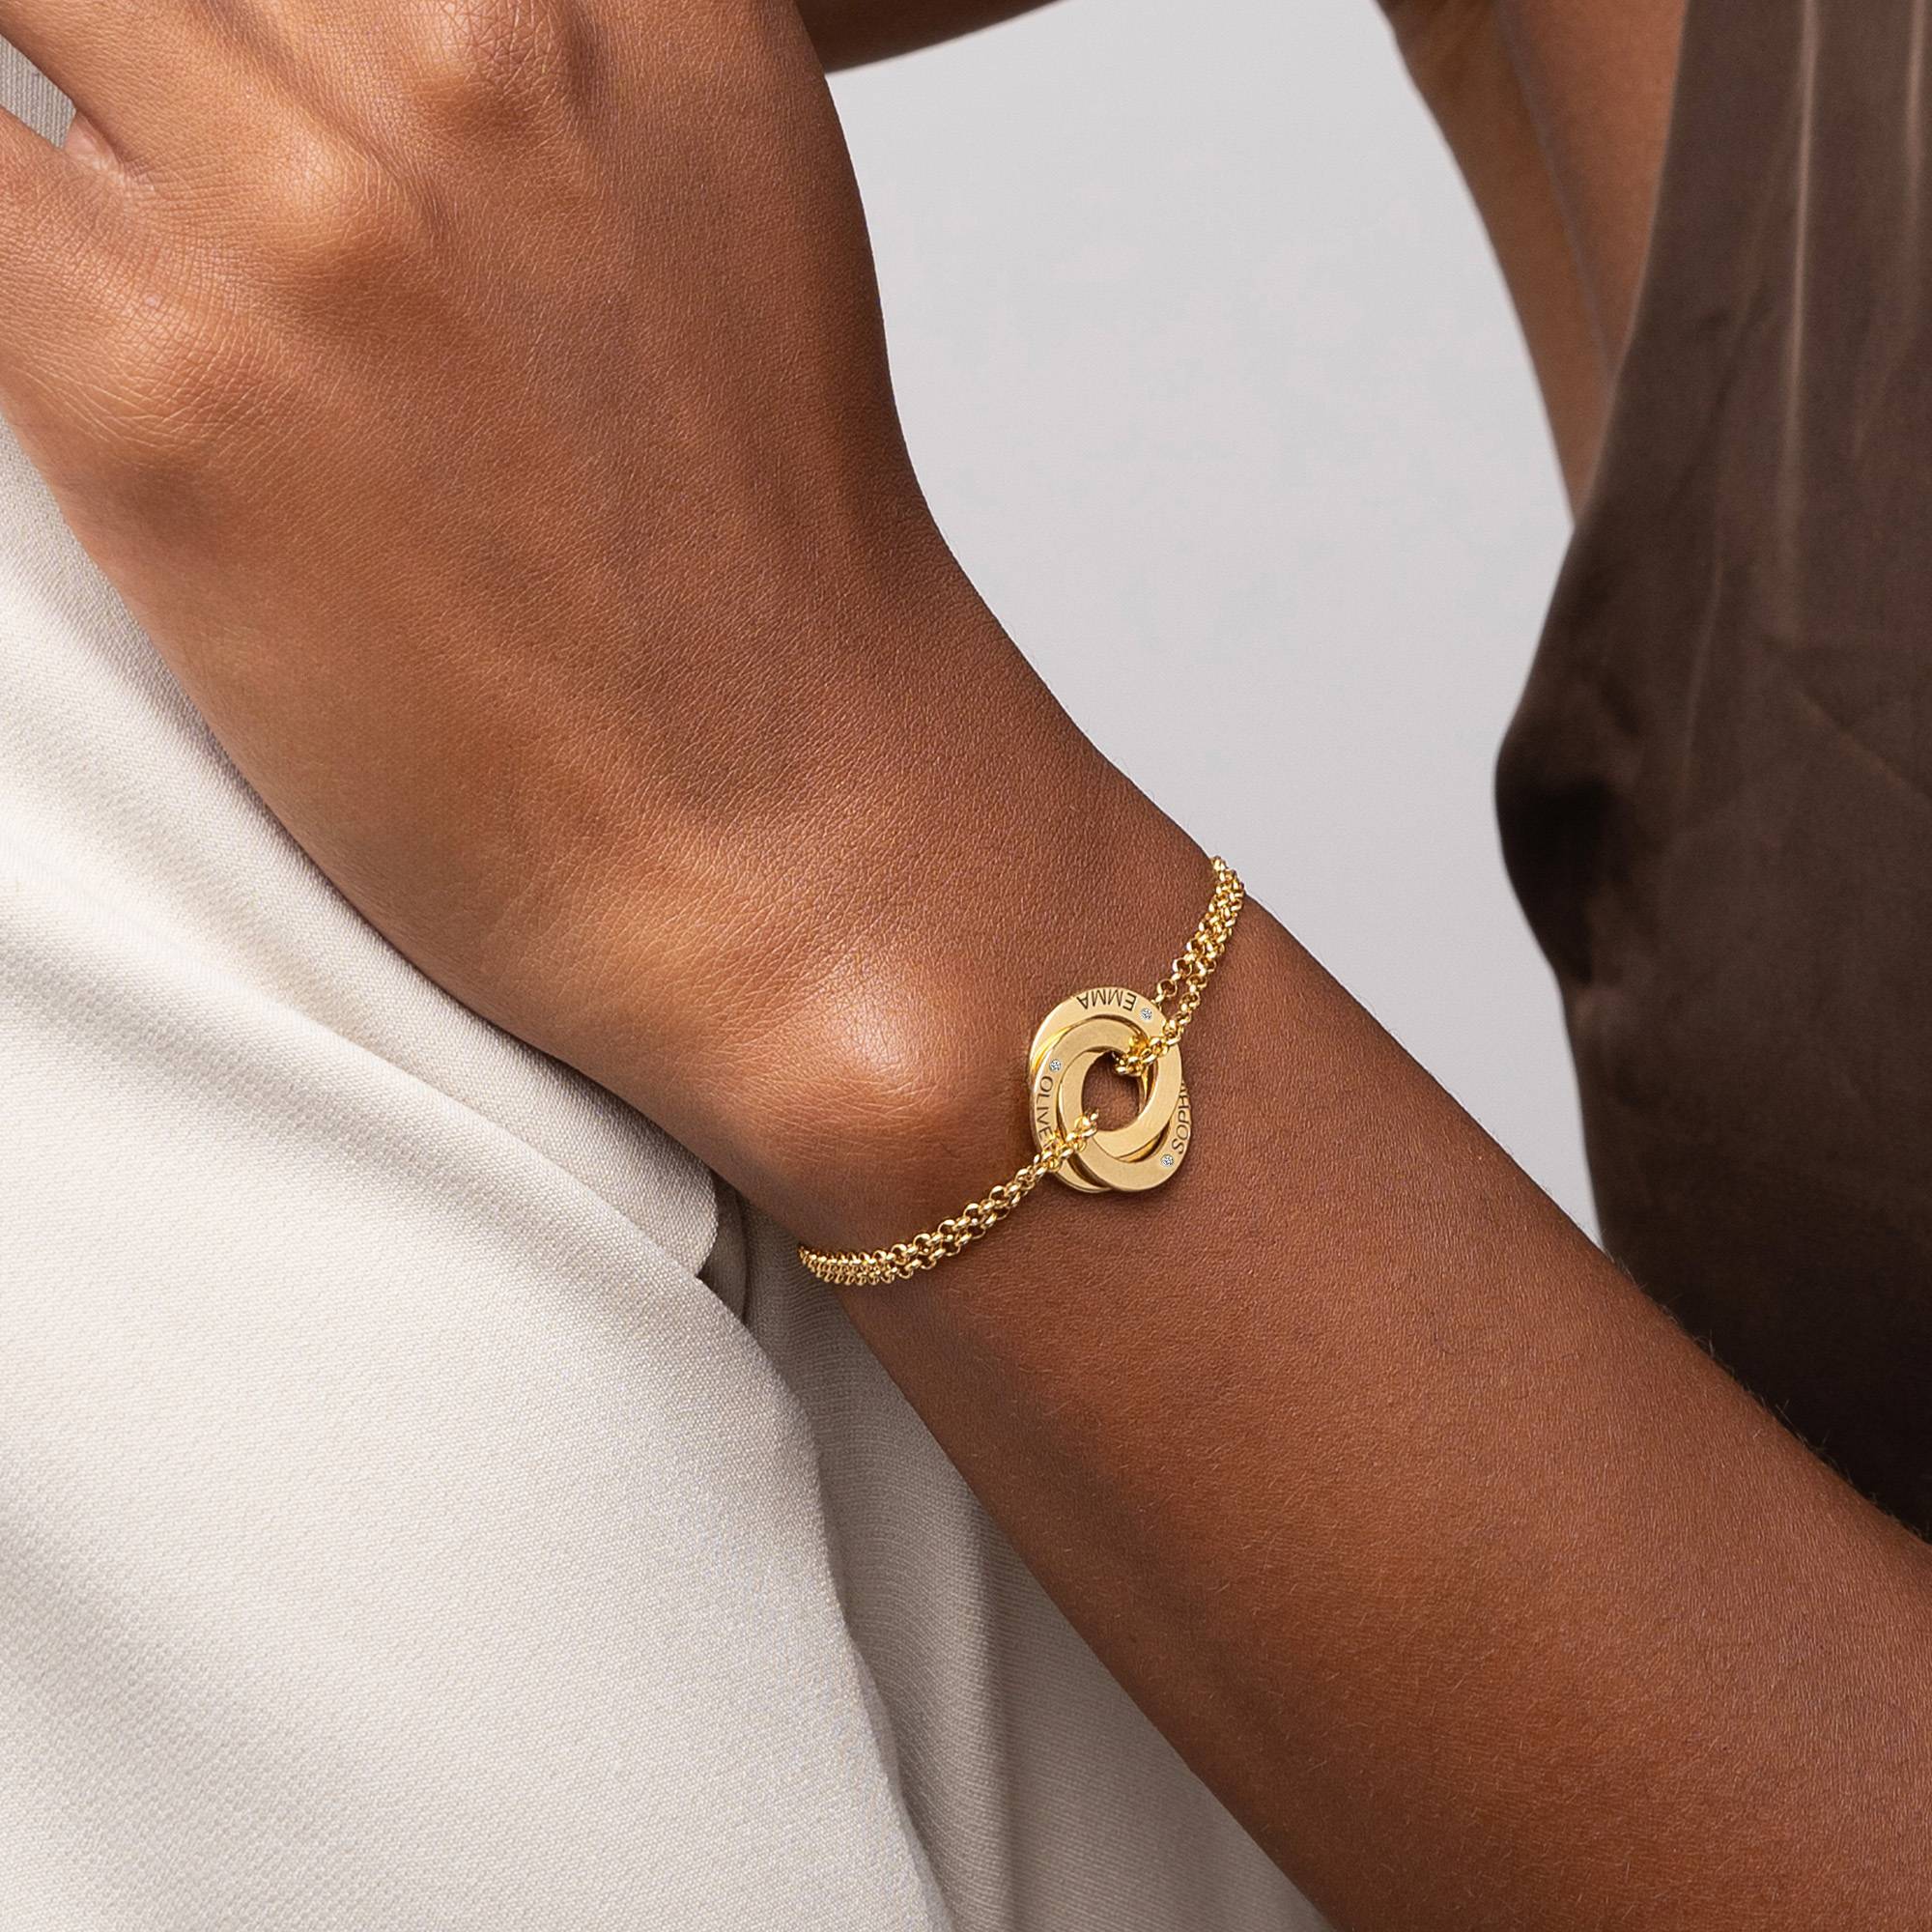 Lucy Russische Ring-Armband mit Diamant - 750er Gold-Vermeil-3 Produktfoto